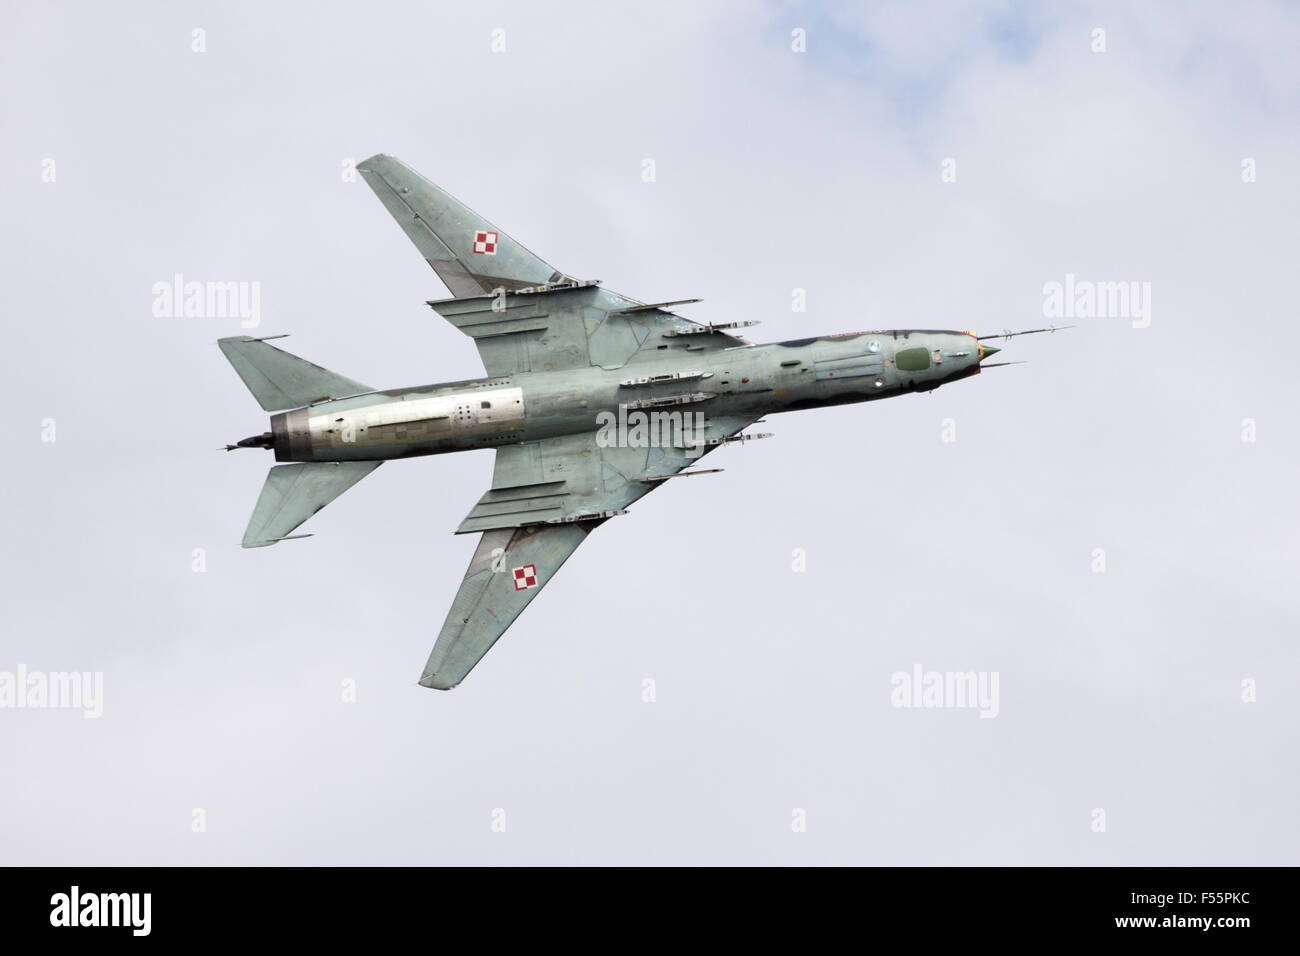 Polnische Luftwaffe Sukhoi Su-22 Bomber Flugzeug Vorbeiflug am niederländischen Luftwaffe Open Day. Stockfoto